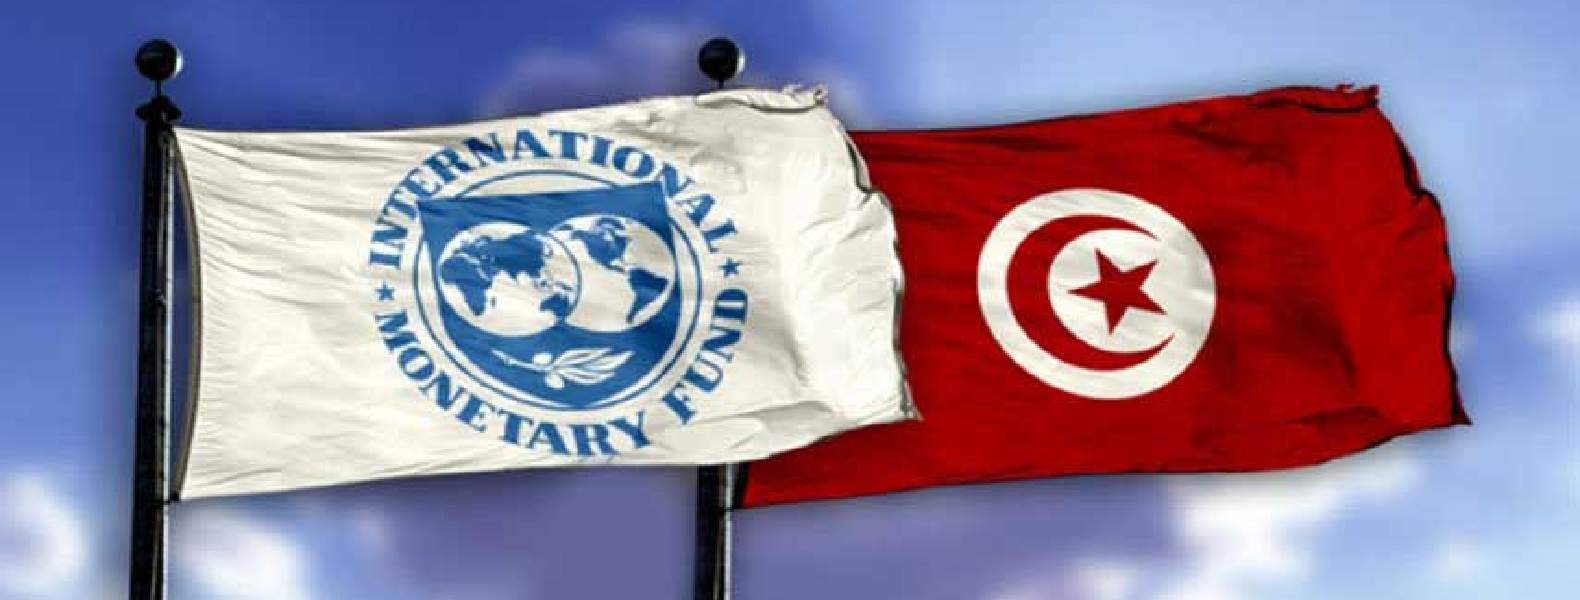 تعاني تونس من أزمة سيولة، دفعتها للاقتراض، فيما تترقب اتفاق جديد مع صندوق النقد الدولي للحصول على تمويل بنحو 1.9 مليار دولار يدعم ميزانيتها. (وكالات)